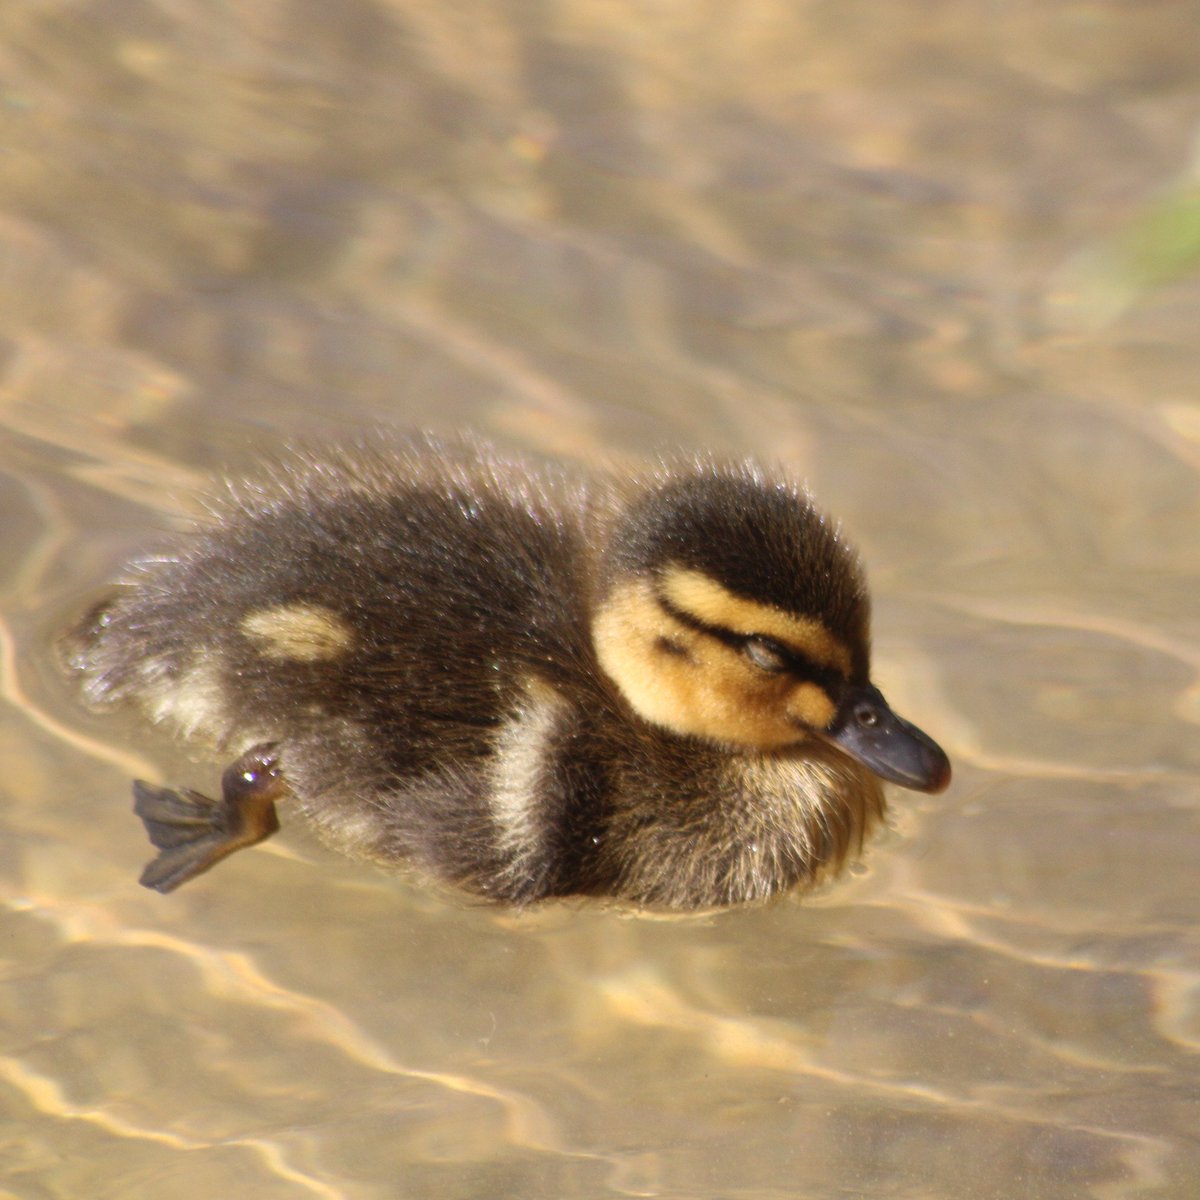 Him float.Baby duck thread - Part 6